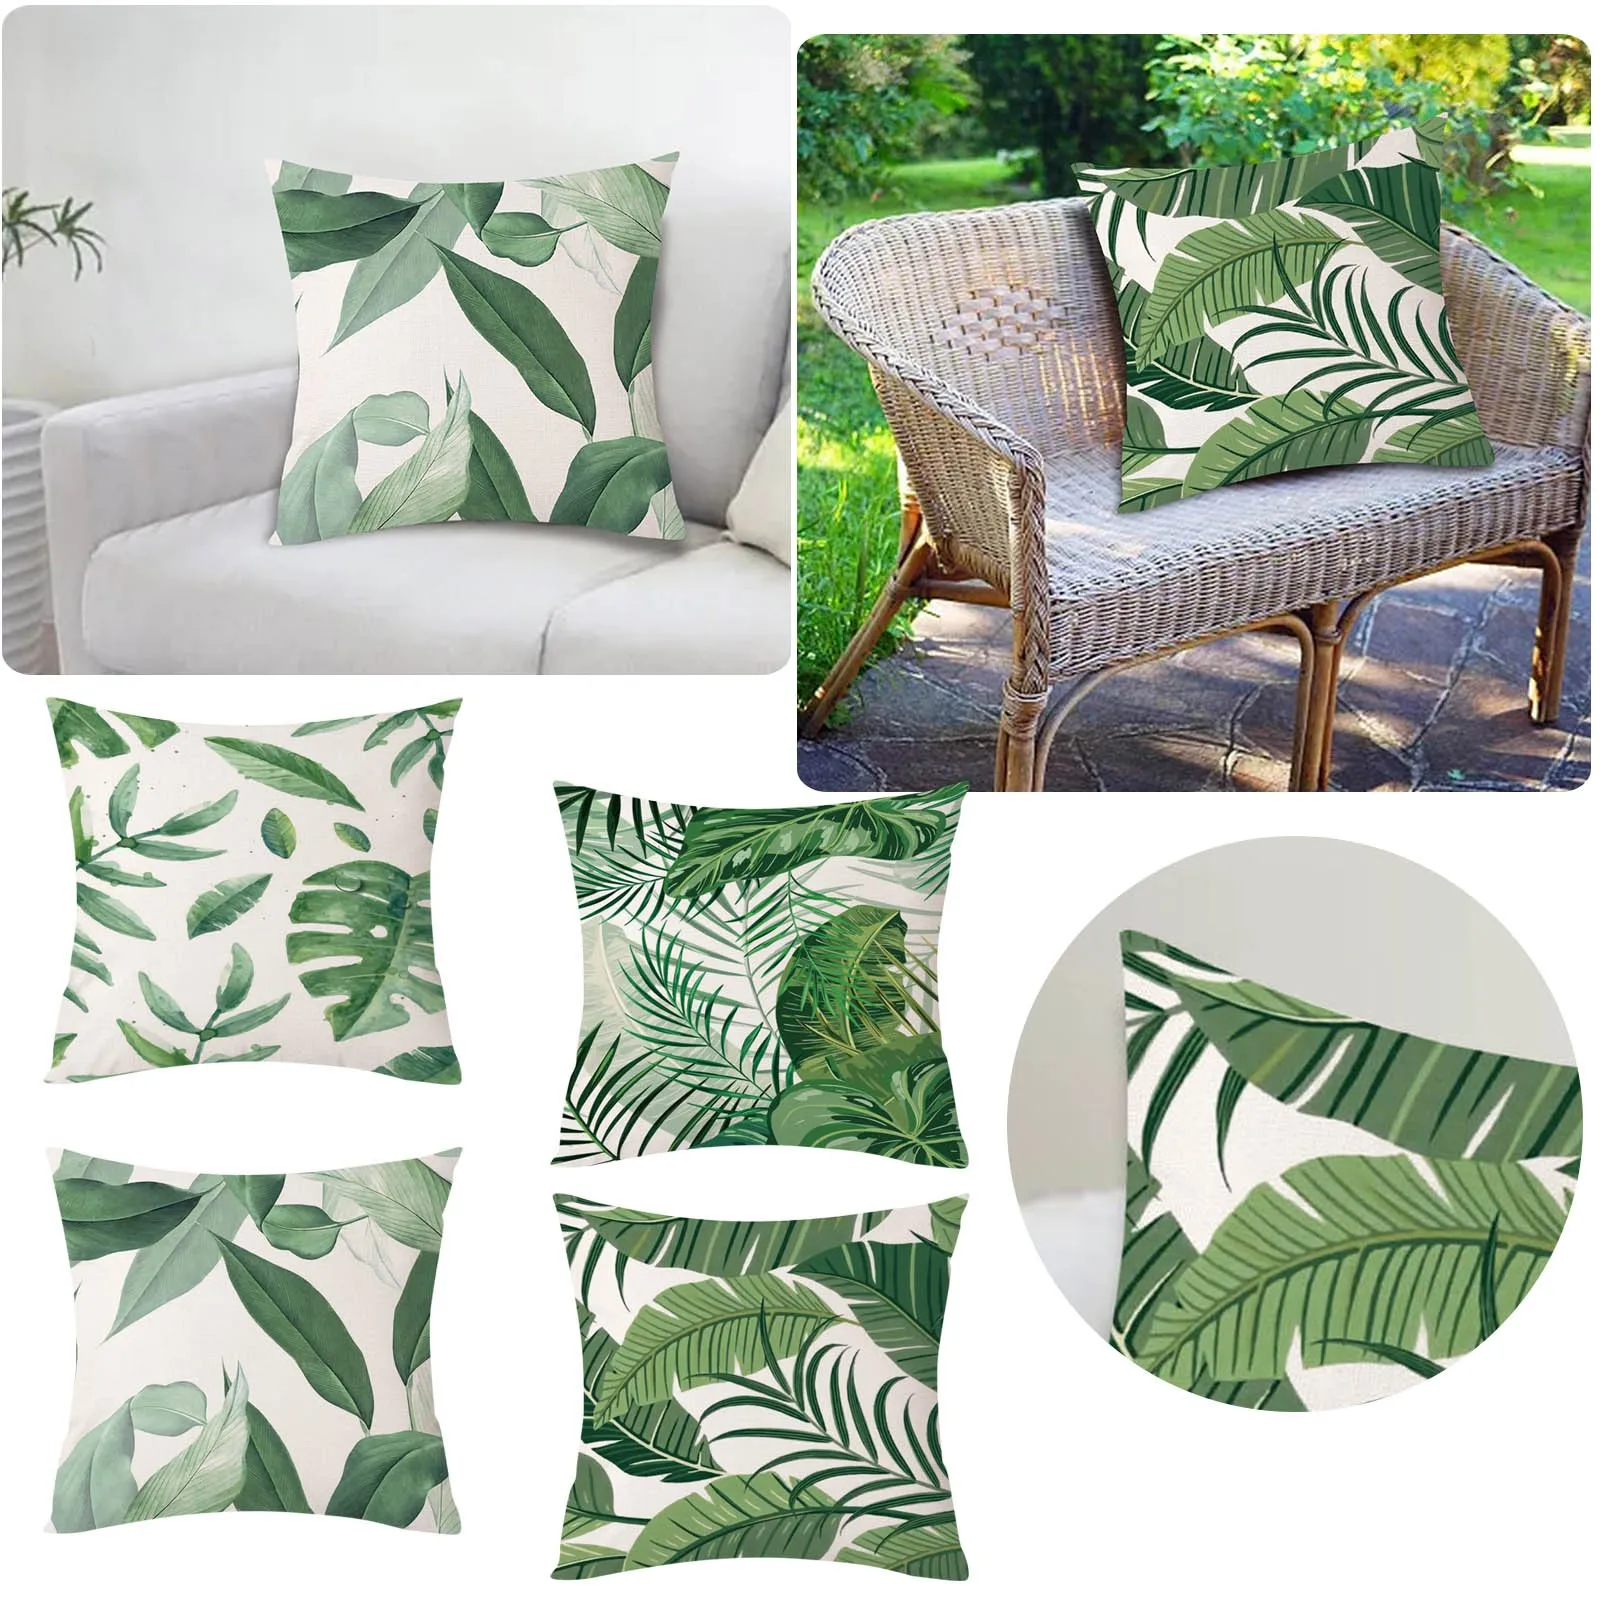 

Декоративные подушки для кровати, диванная наволочка с изображением зеленых растительных джунглей, листьев тропических дождевых лесов